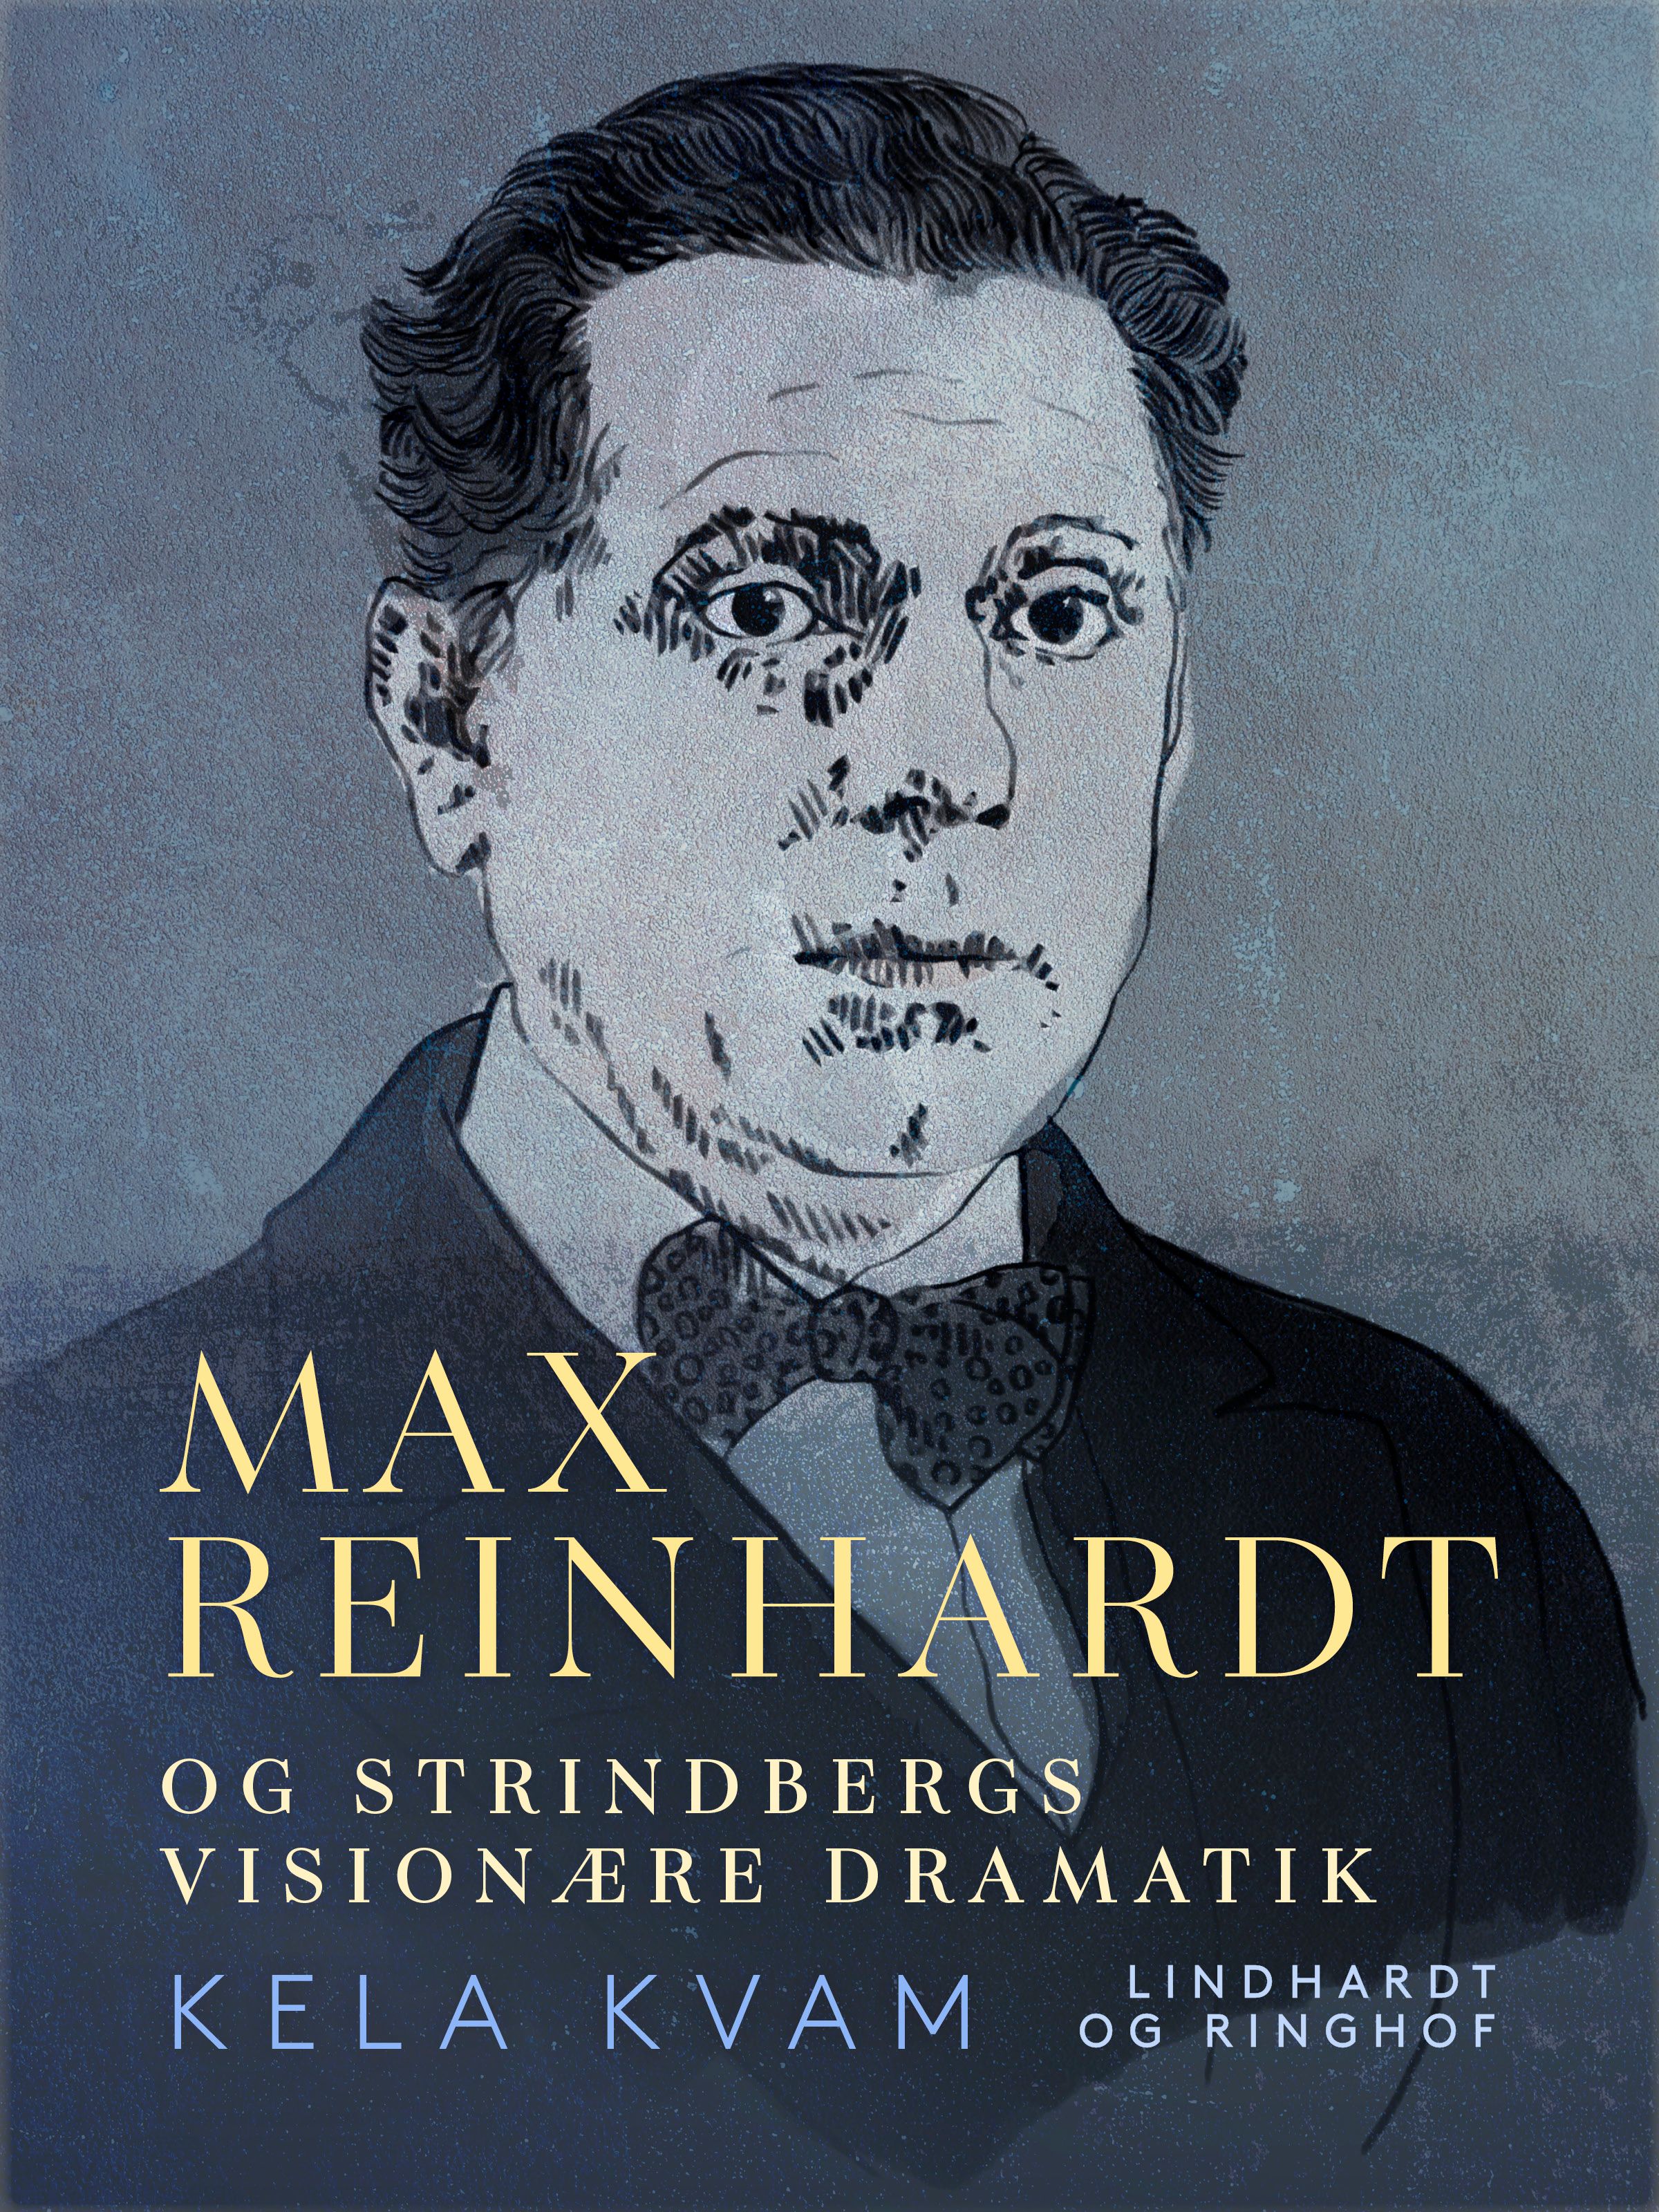 Max Reinhardt og Strindbergs visionære dramatik, e-bog af Kela Kvam